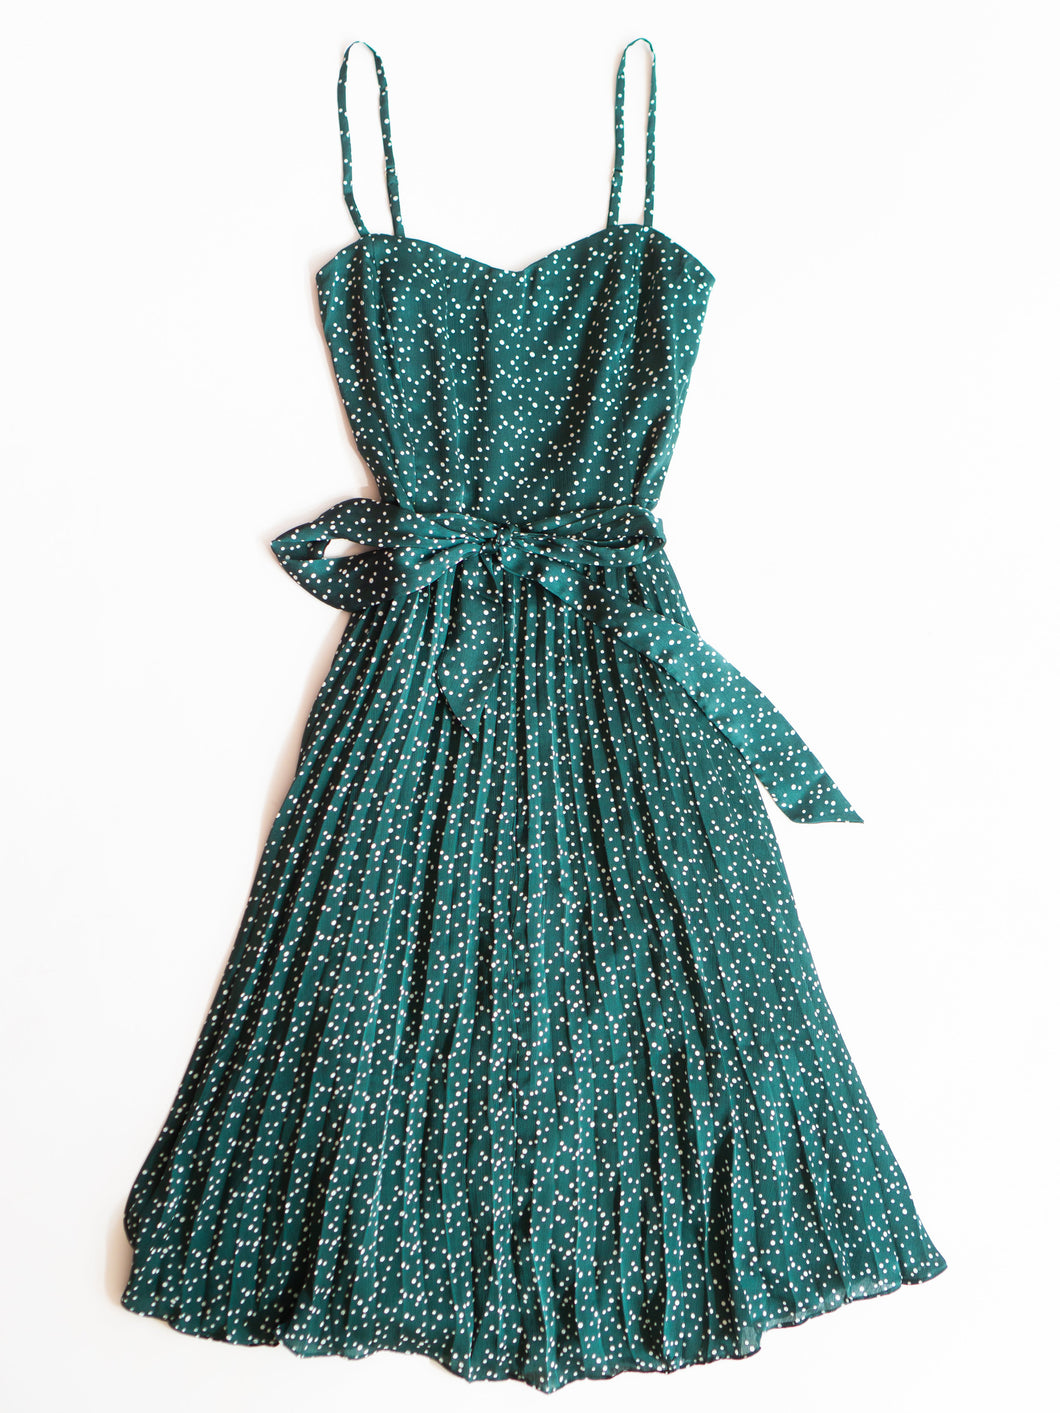 Saskia Pleated Dress